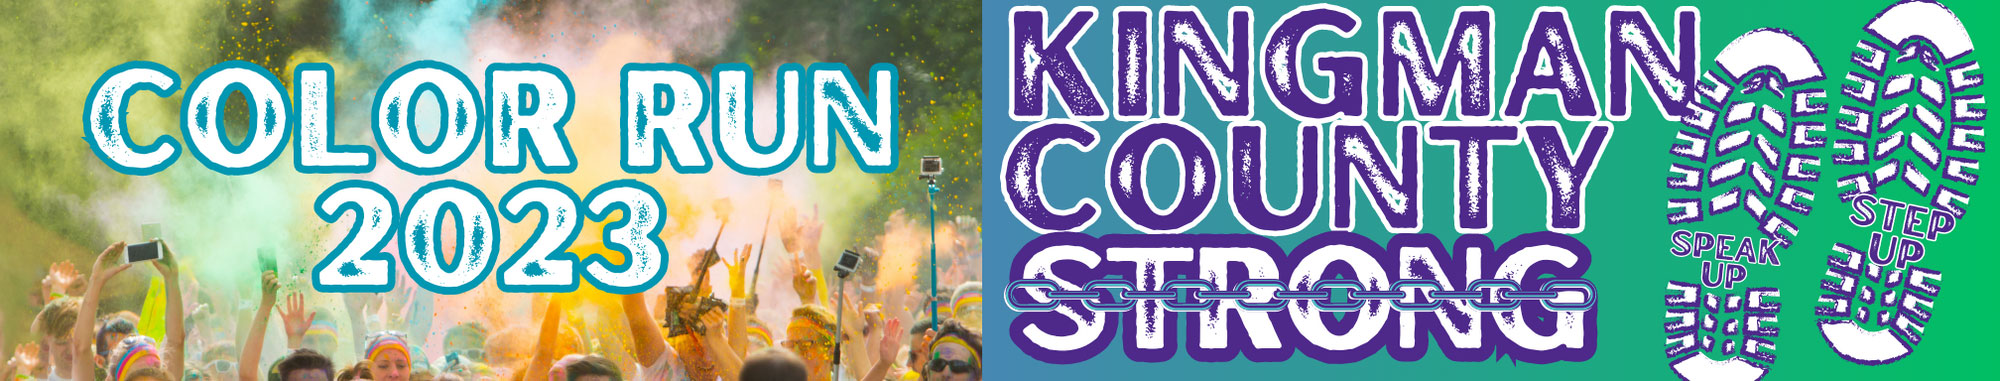 Color Run 2023 Kingman County Strong